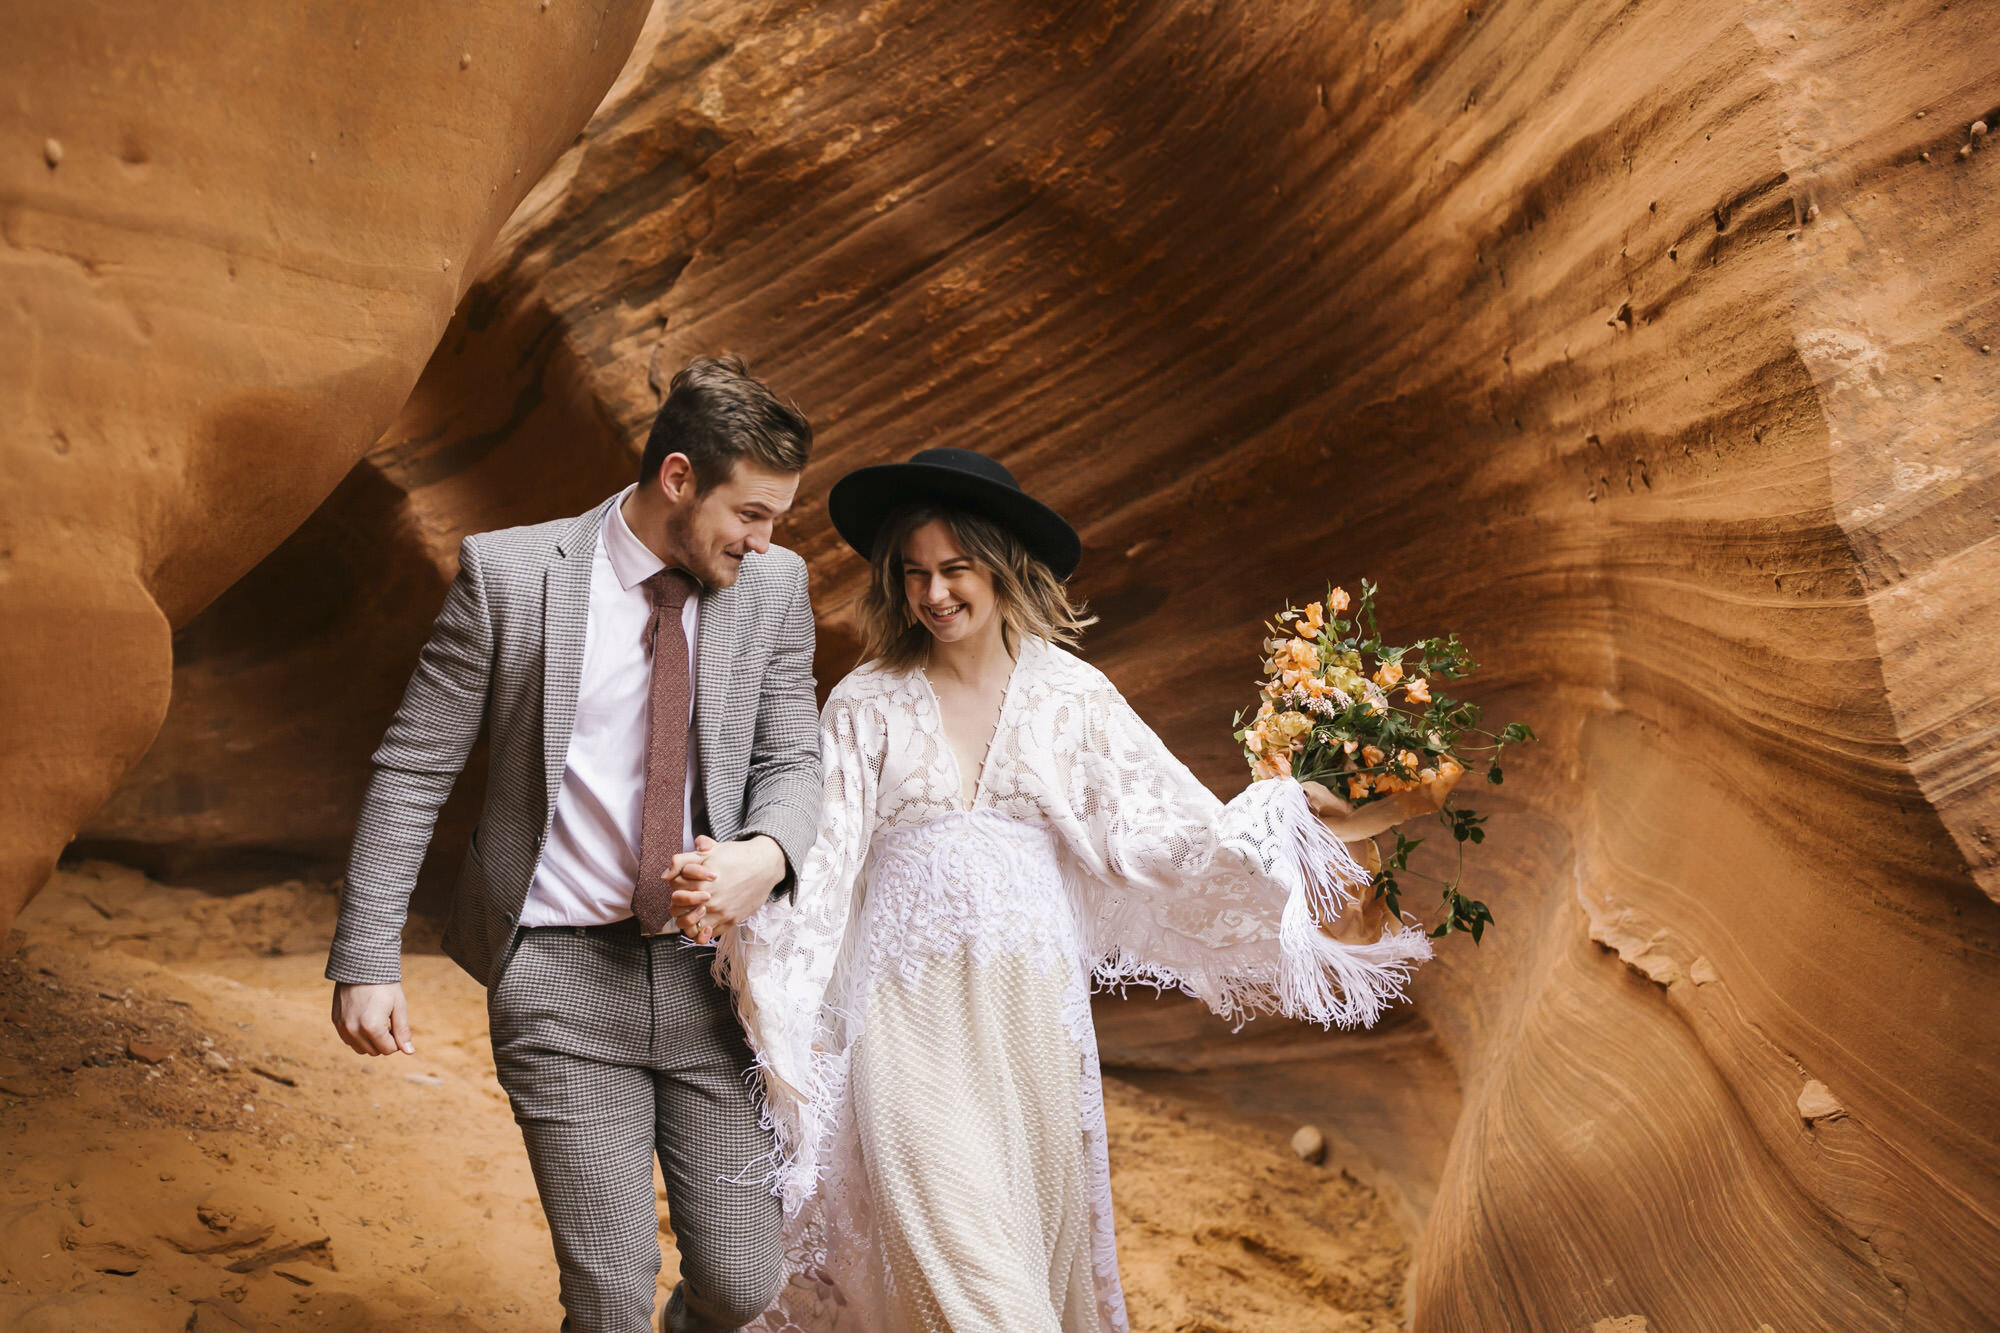 Wedding couple run through the end of a slot canyon in the Arizona desert